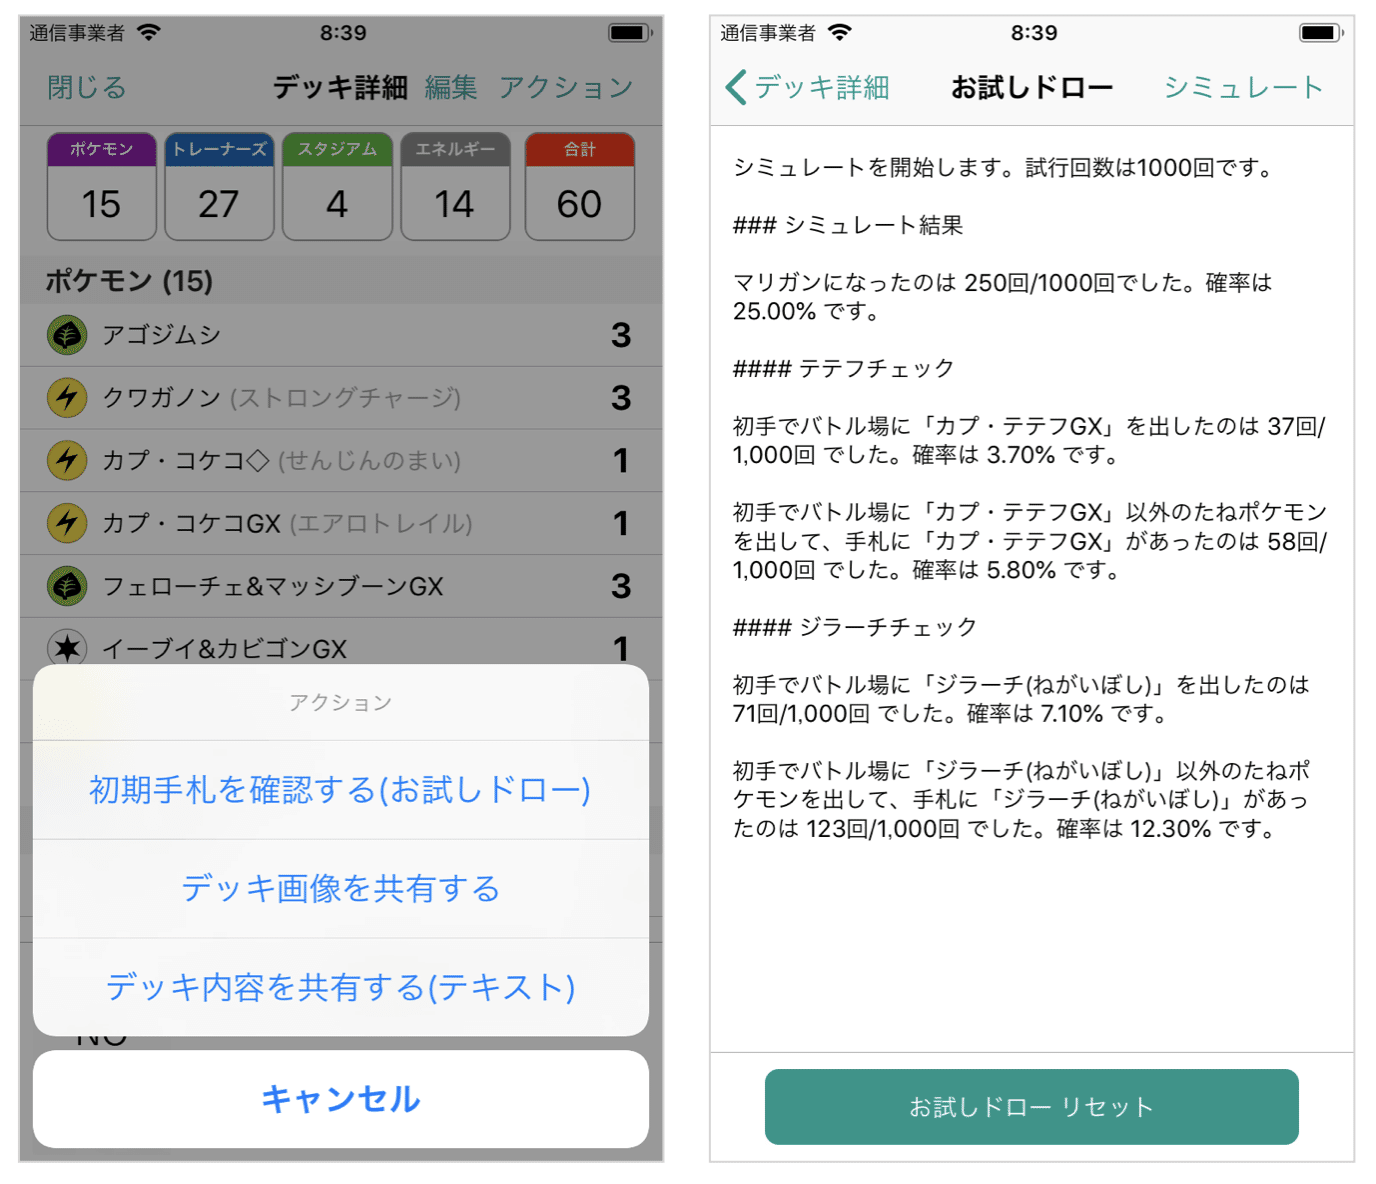 ポケカデッキ構築アプリ Ptcgnote V1 0 5をリリースしました Kenji Wada さくさん Note